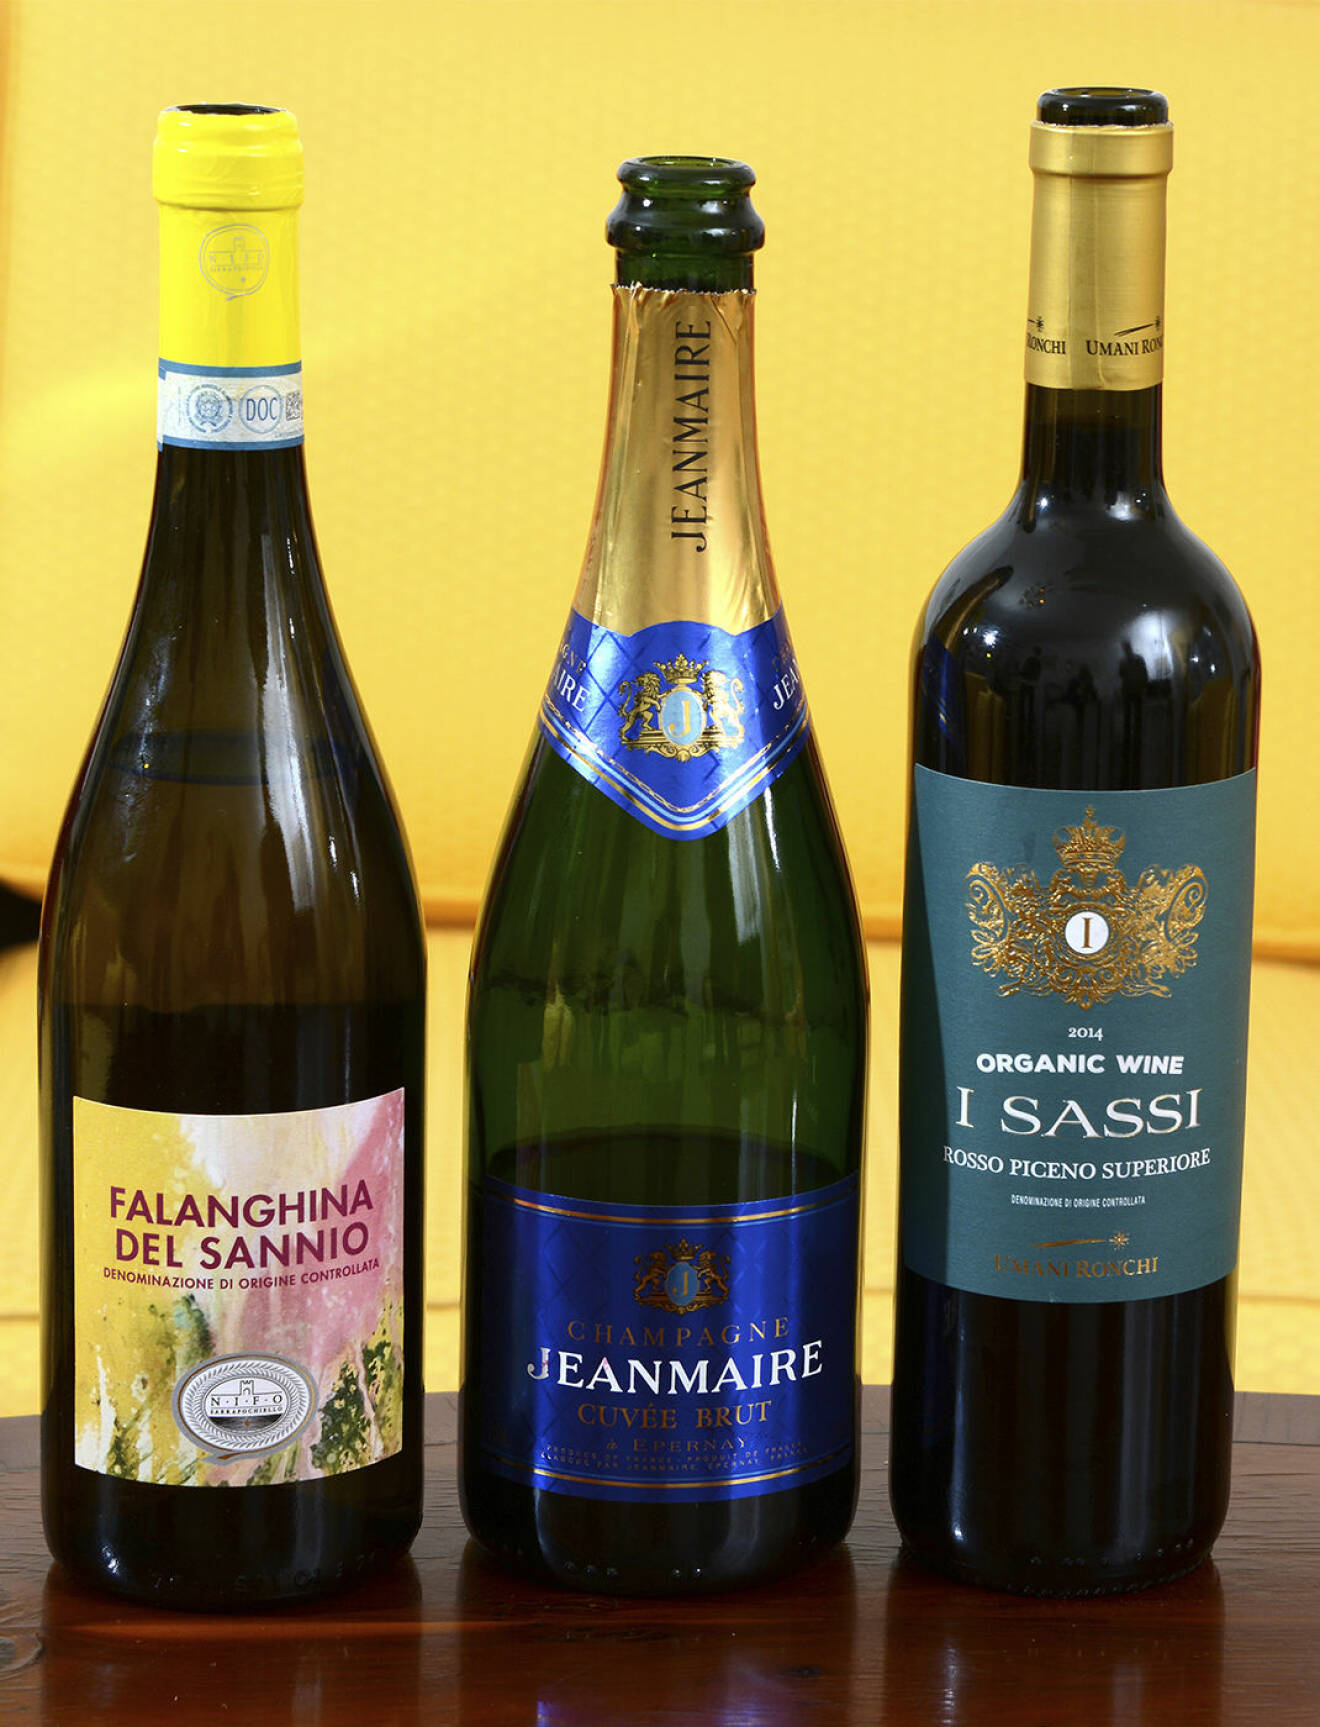 ekologiska viner, det vita Falanghina del Sannio och det röda I Sassi, båda från Italien. Drinken är den friska champagnen Jean Marie.